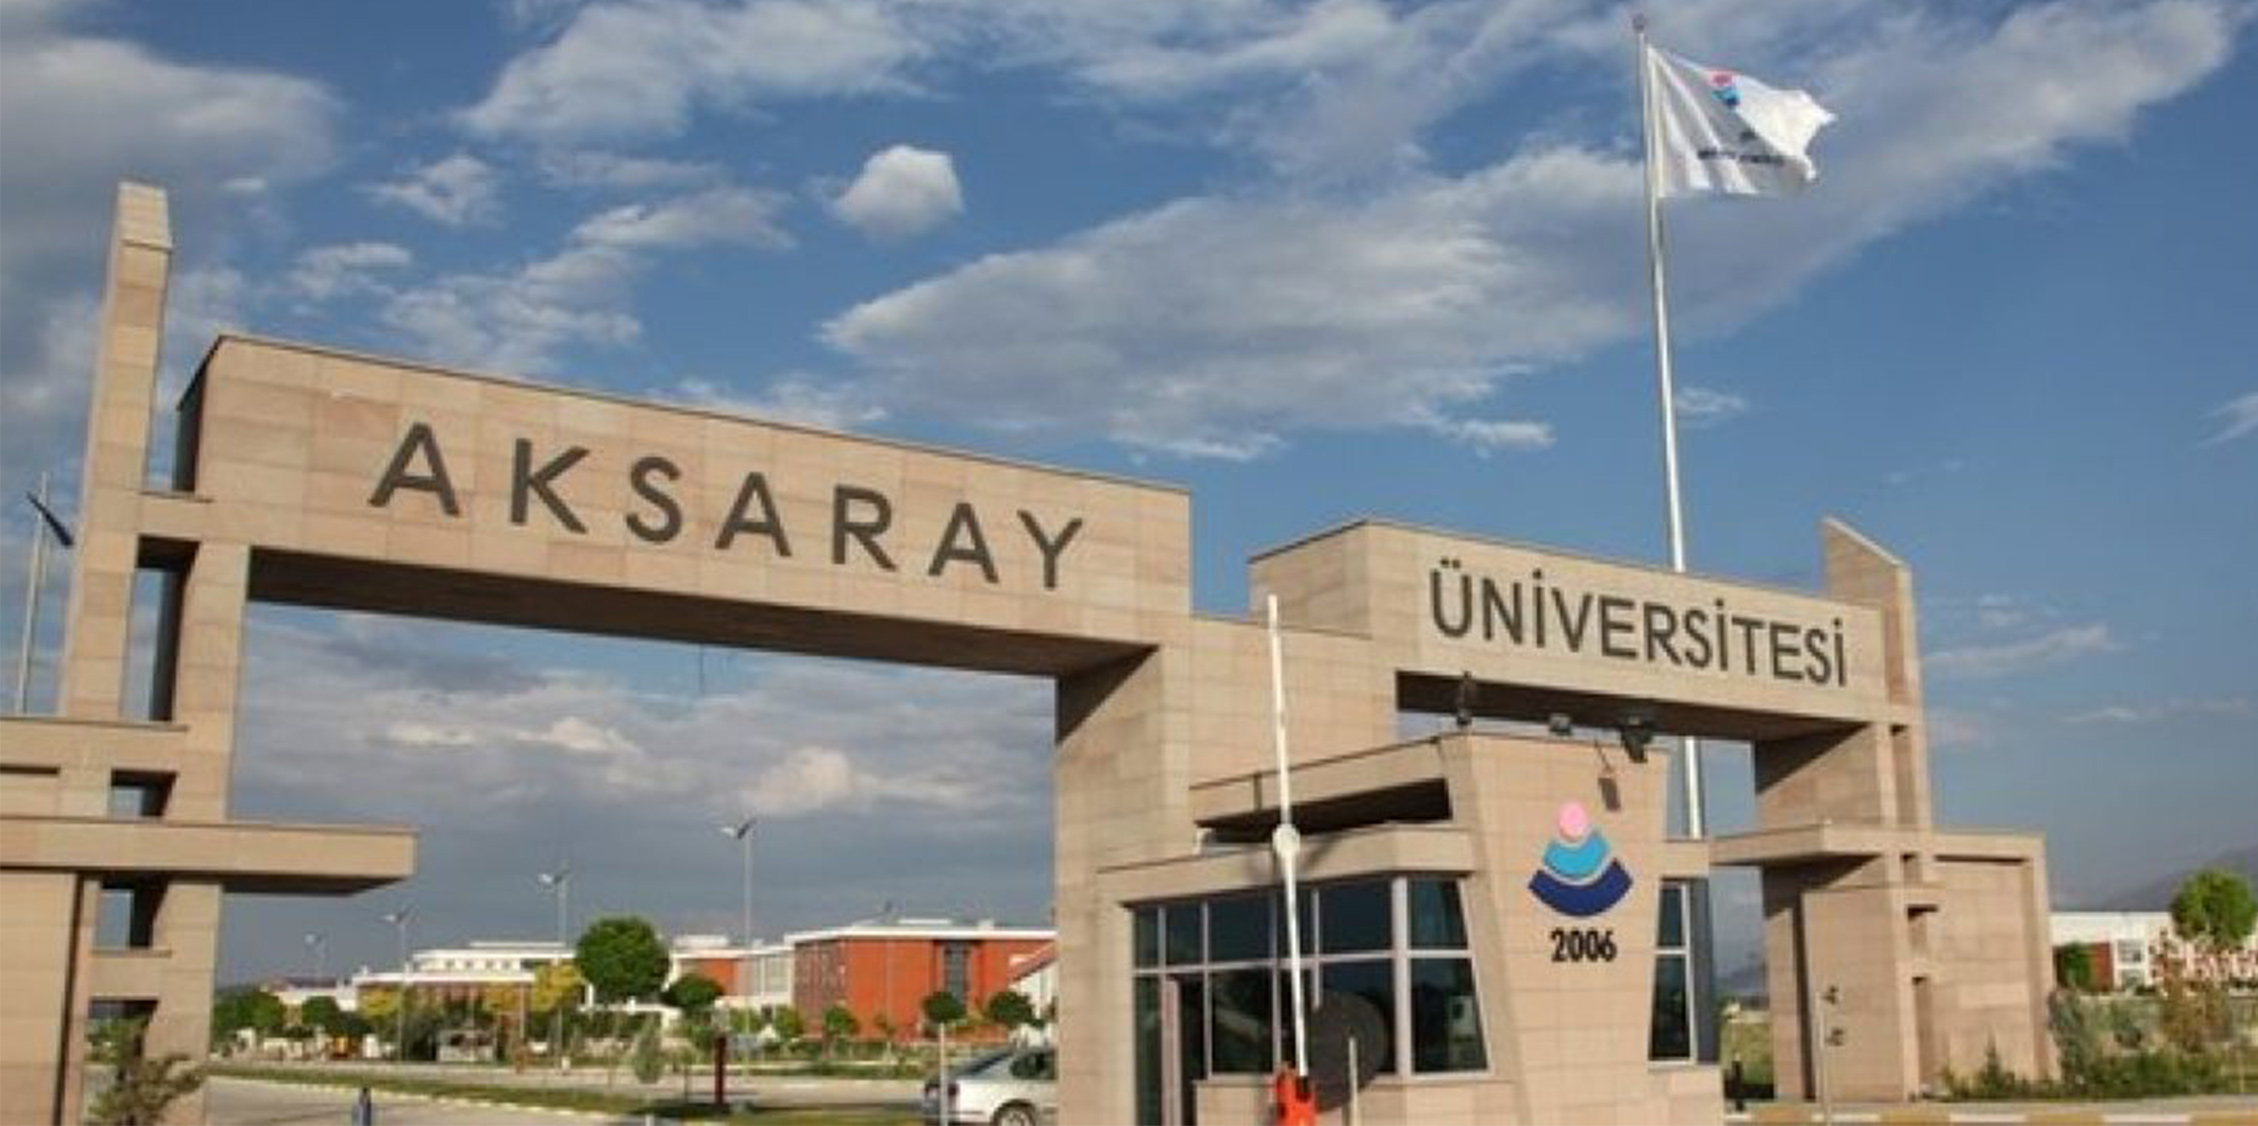 Aksaray Üniversitesi Hakkında Bilgiler